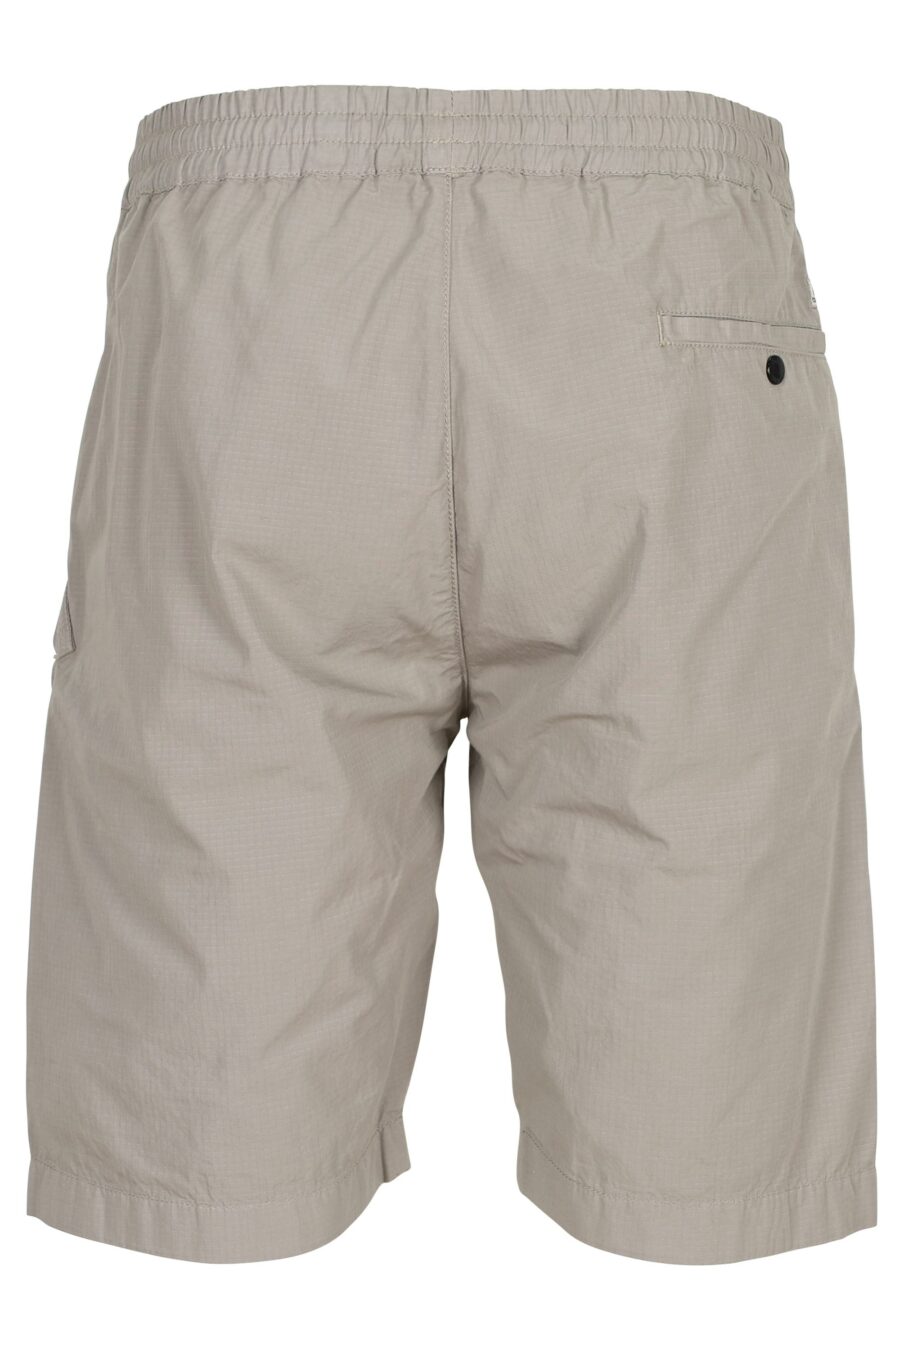 Pantalón corto gris claro con minilogo lente - 7620943690989 2